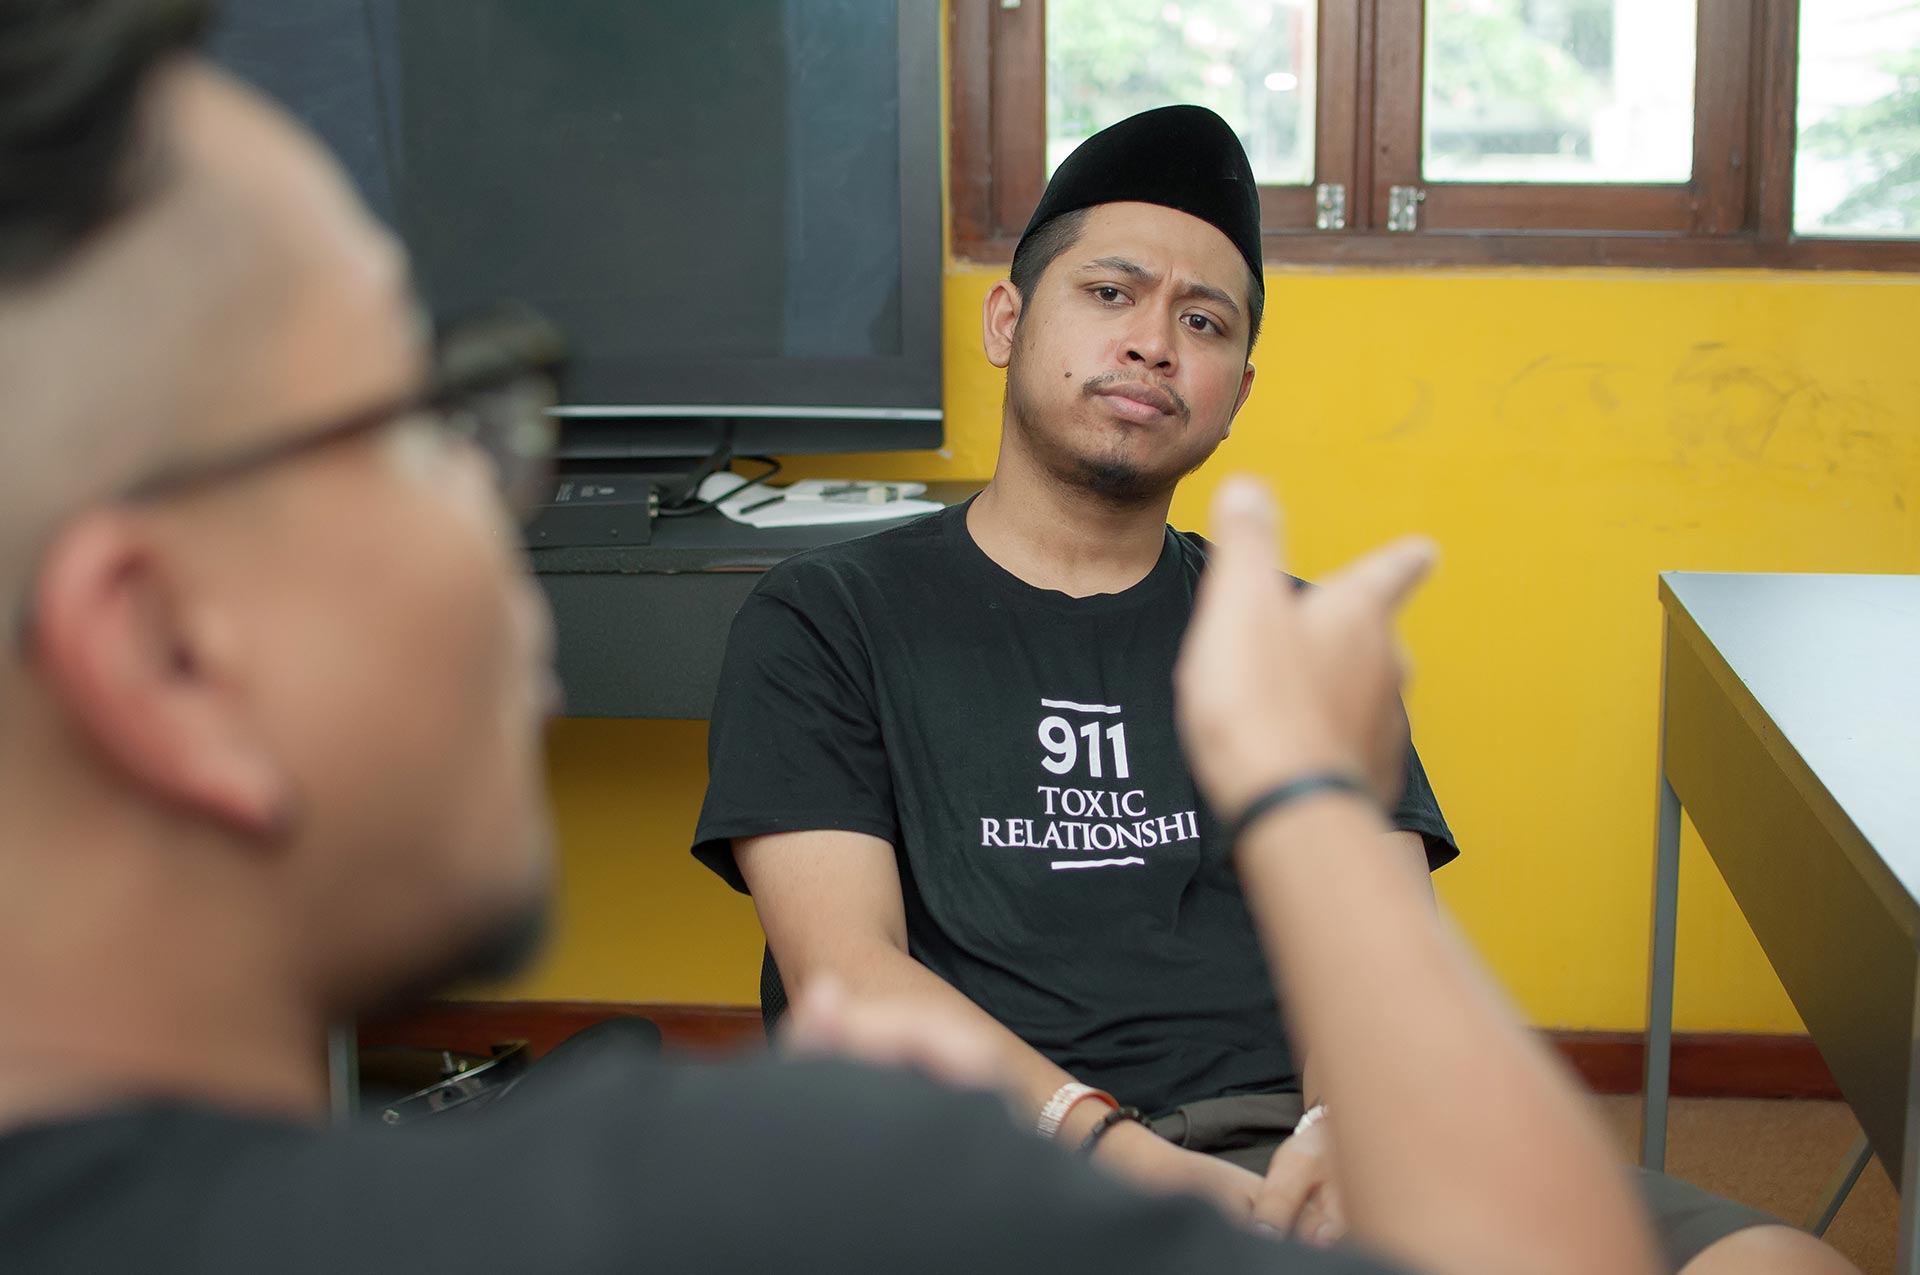 Menantang Konsep Komedi Bersama Majelis Lucu Indonesia Whiteboard Journal